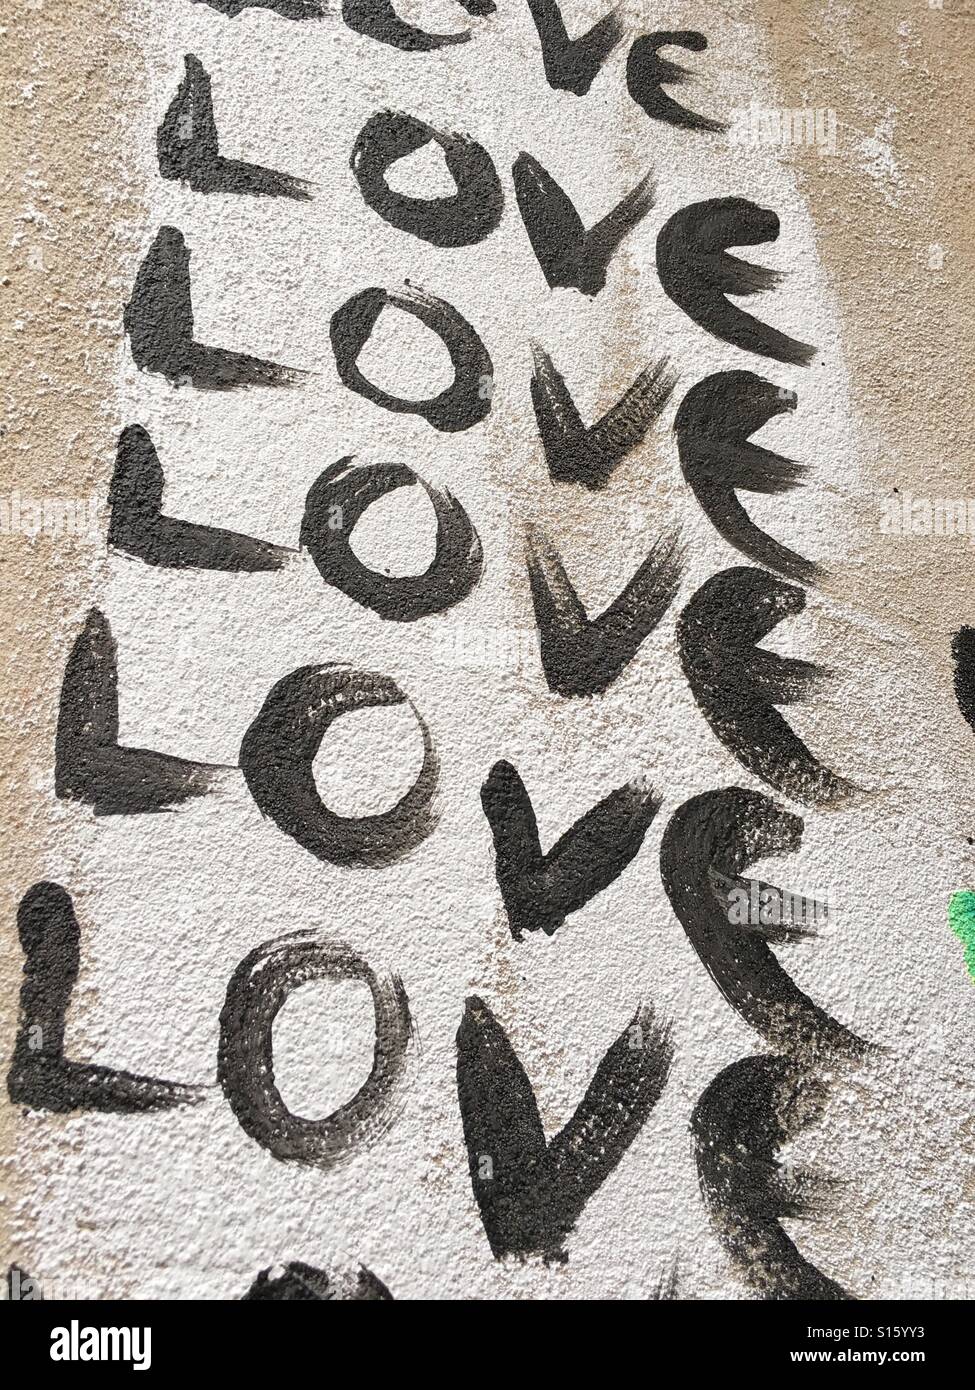 La palabra amor escrito en repetidas ocasiones sobre un muro en Berlín Foto de stock